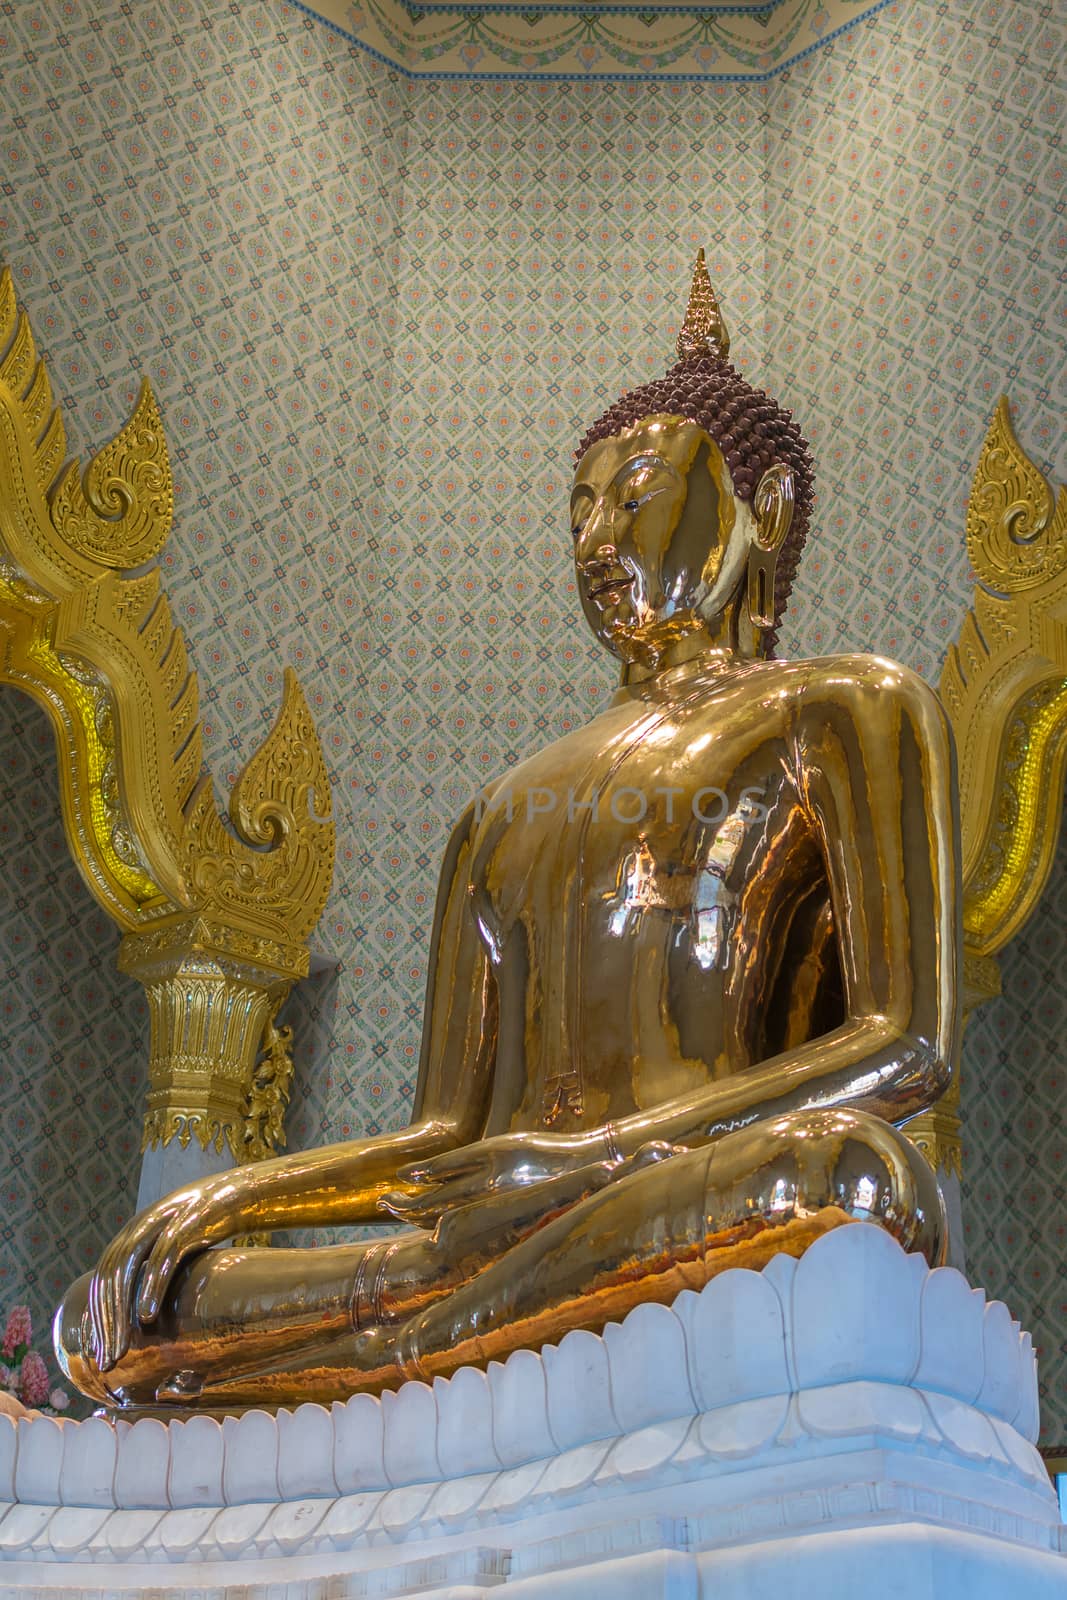 Thai buddha statue, Wat Traimitr Withayaram by PongMoji